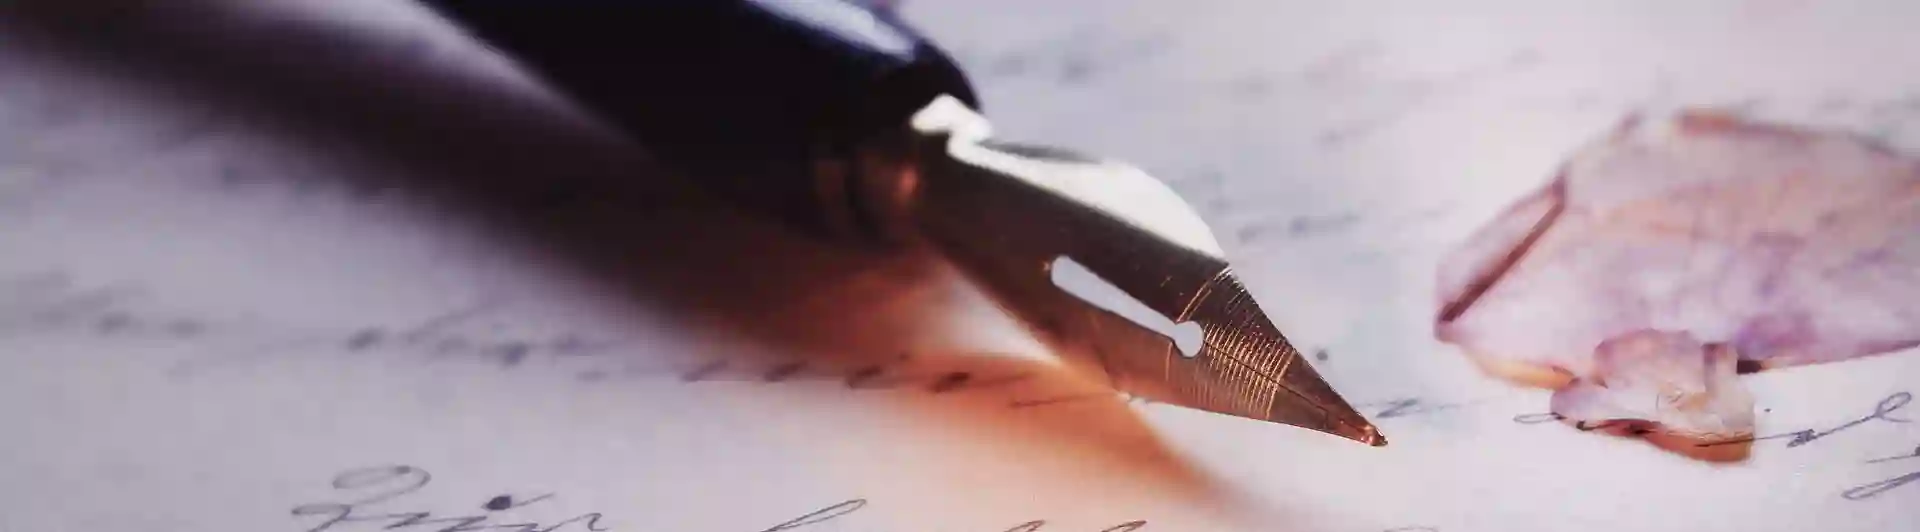 Penna på papper